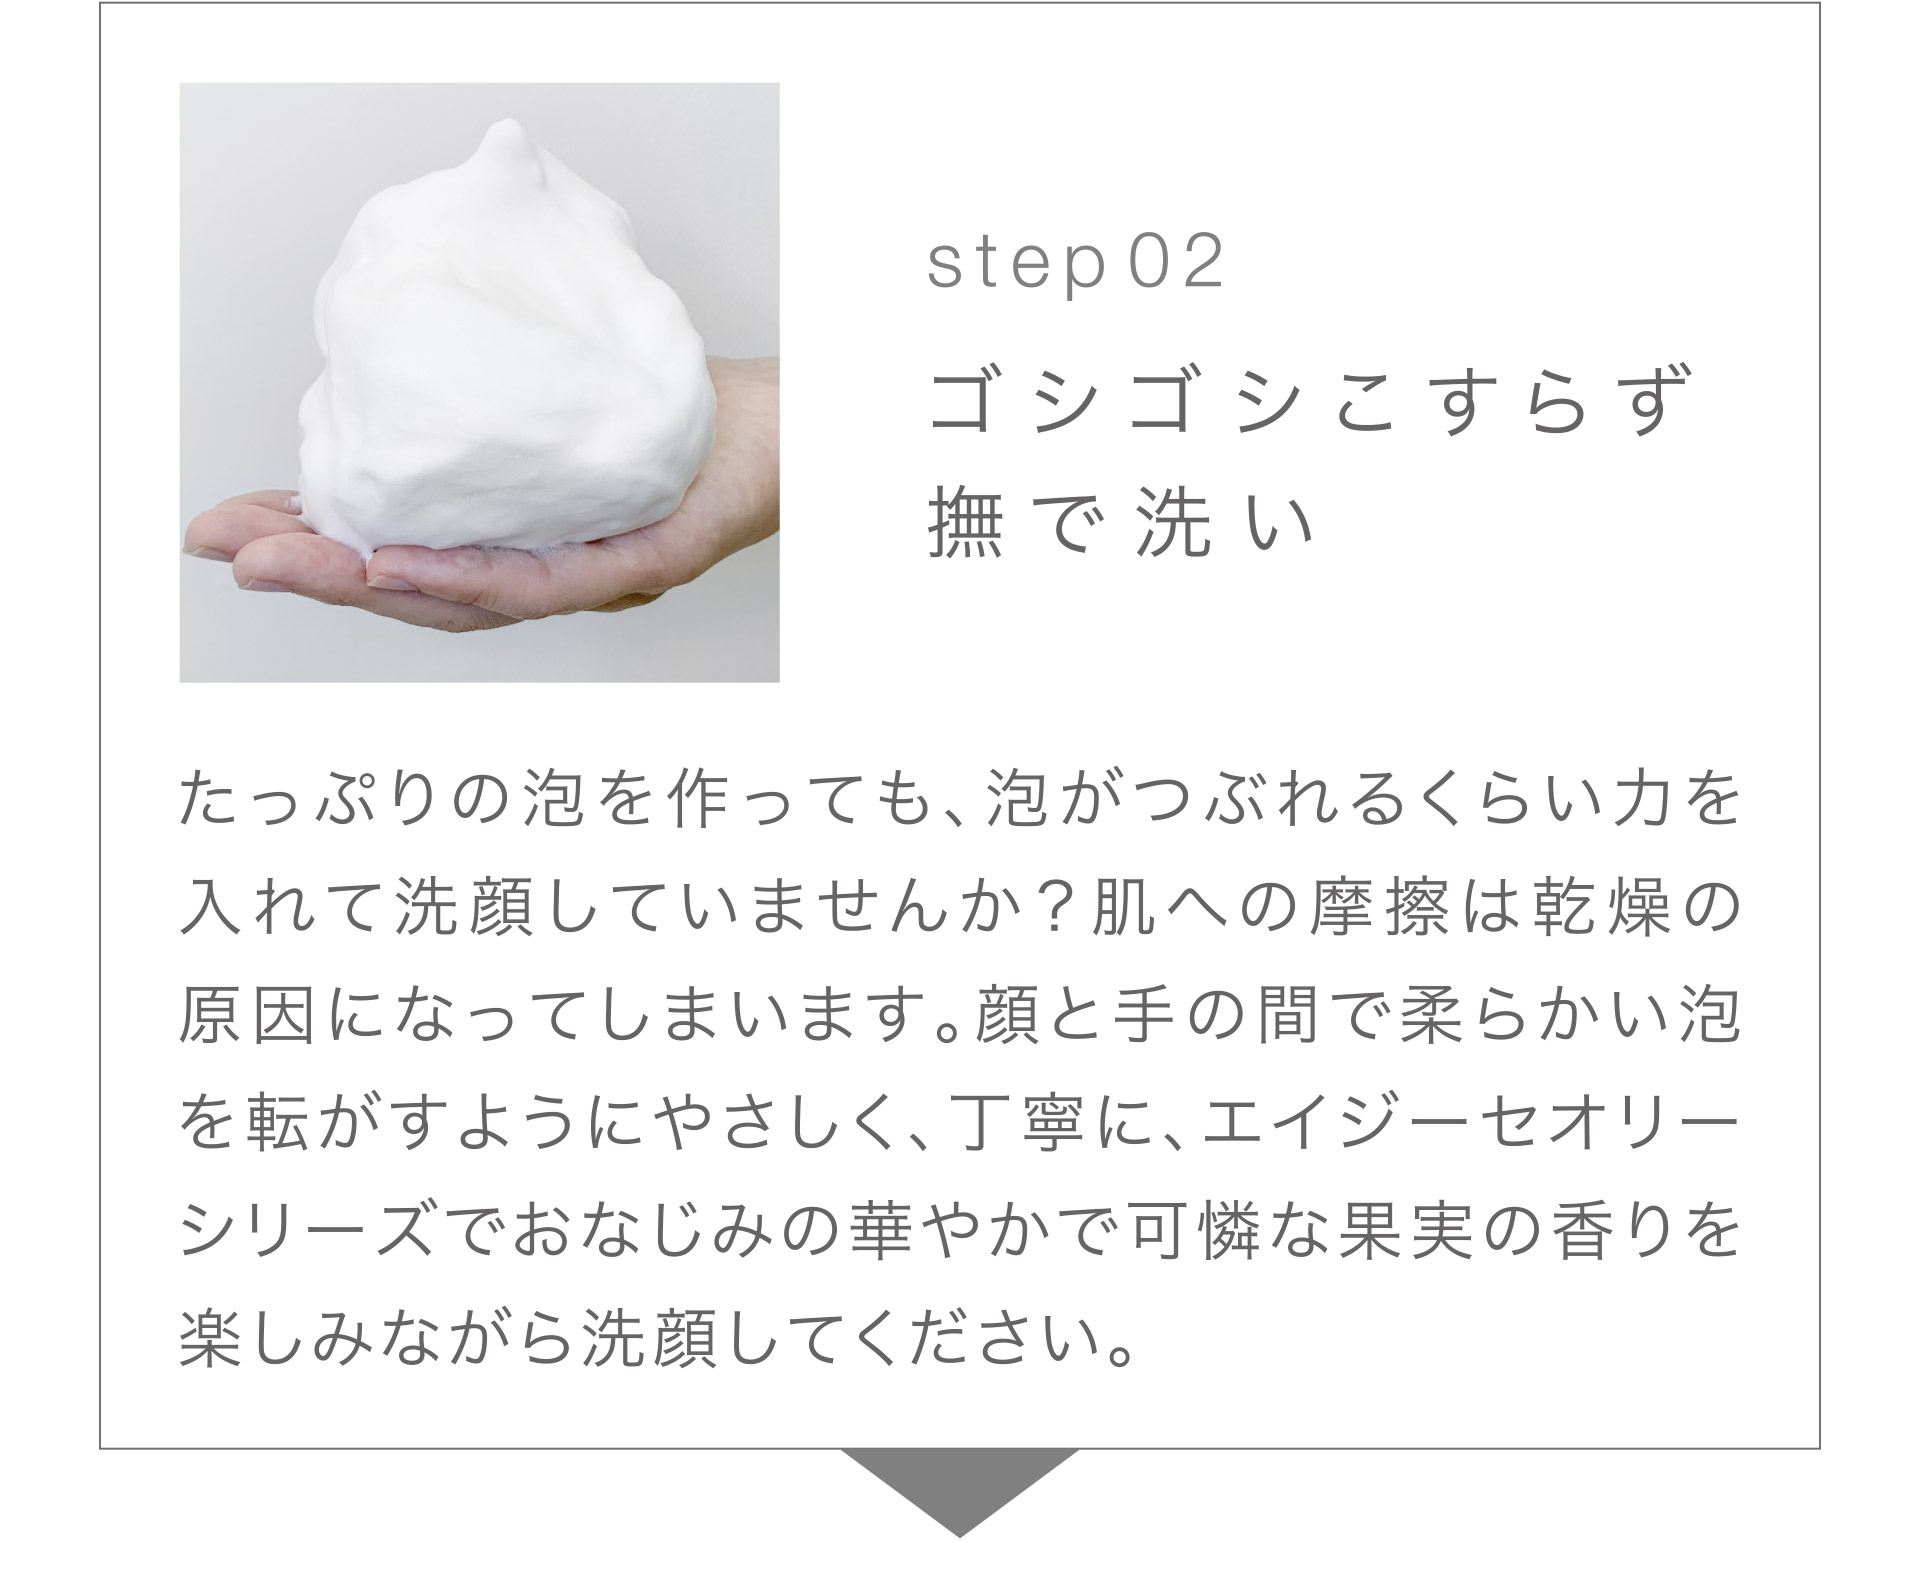 【Step02】ゴシゴシこすらず撫で洗い